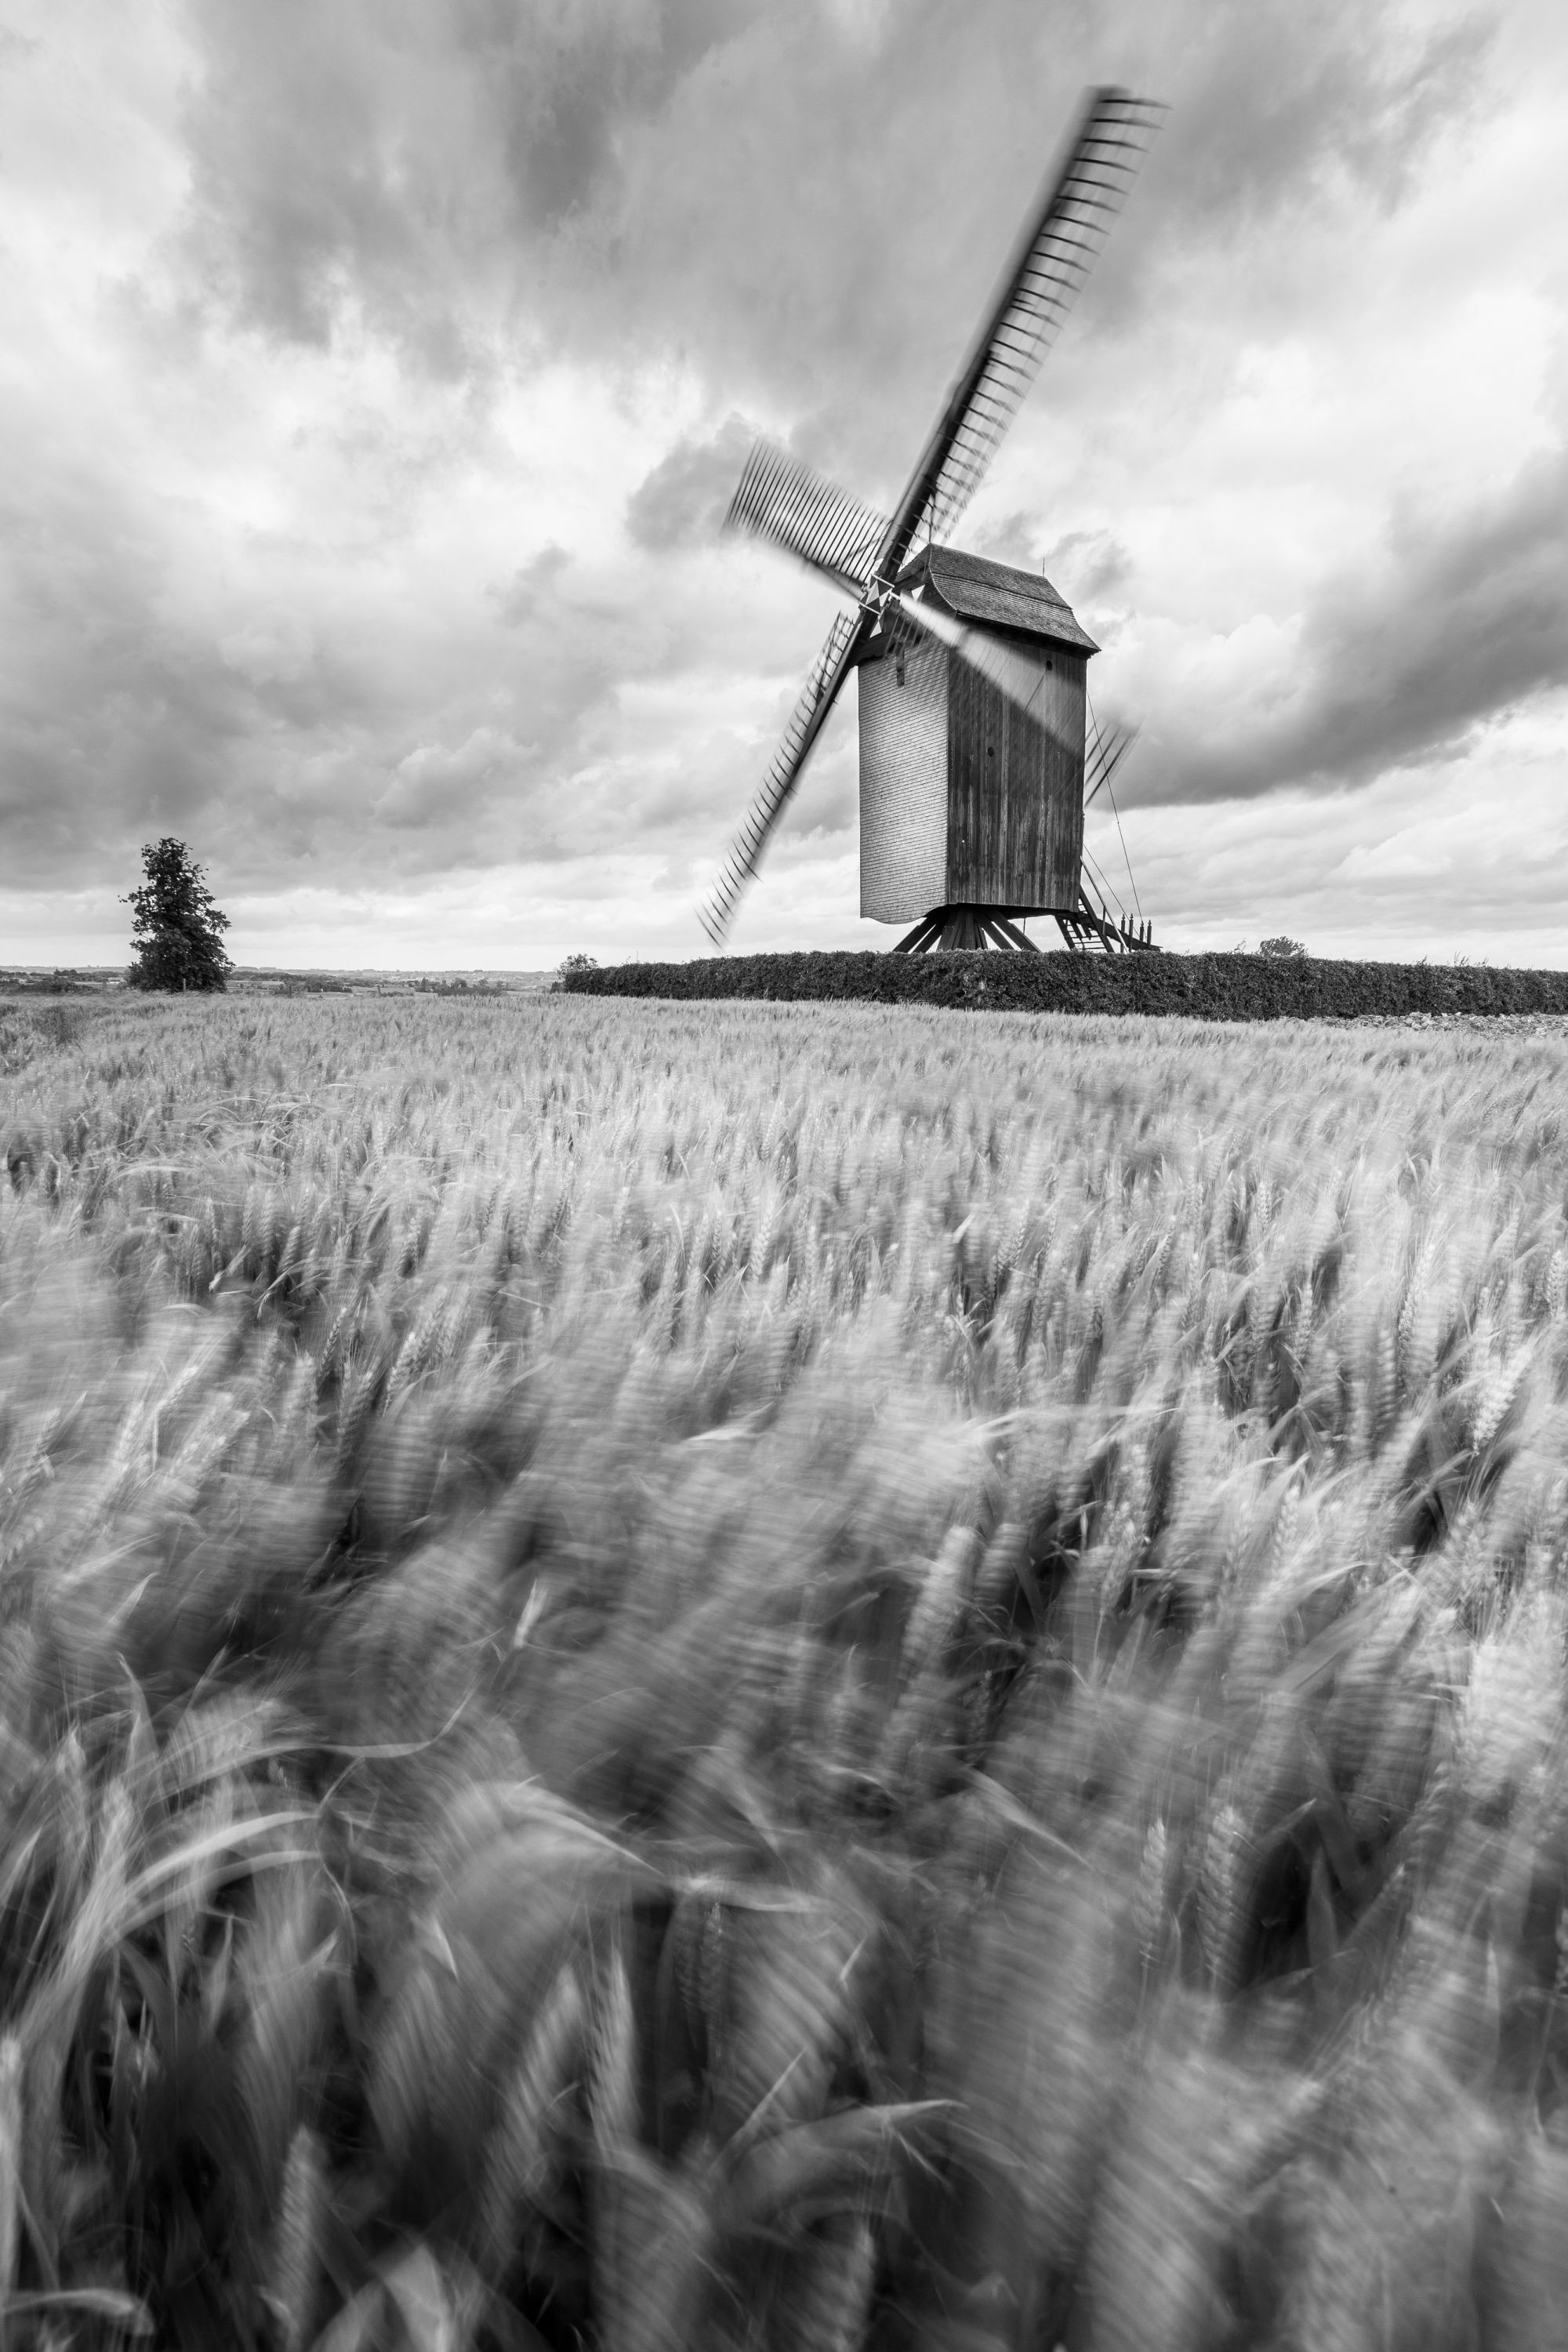 Mill in a field of wheat